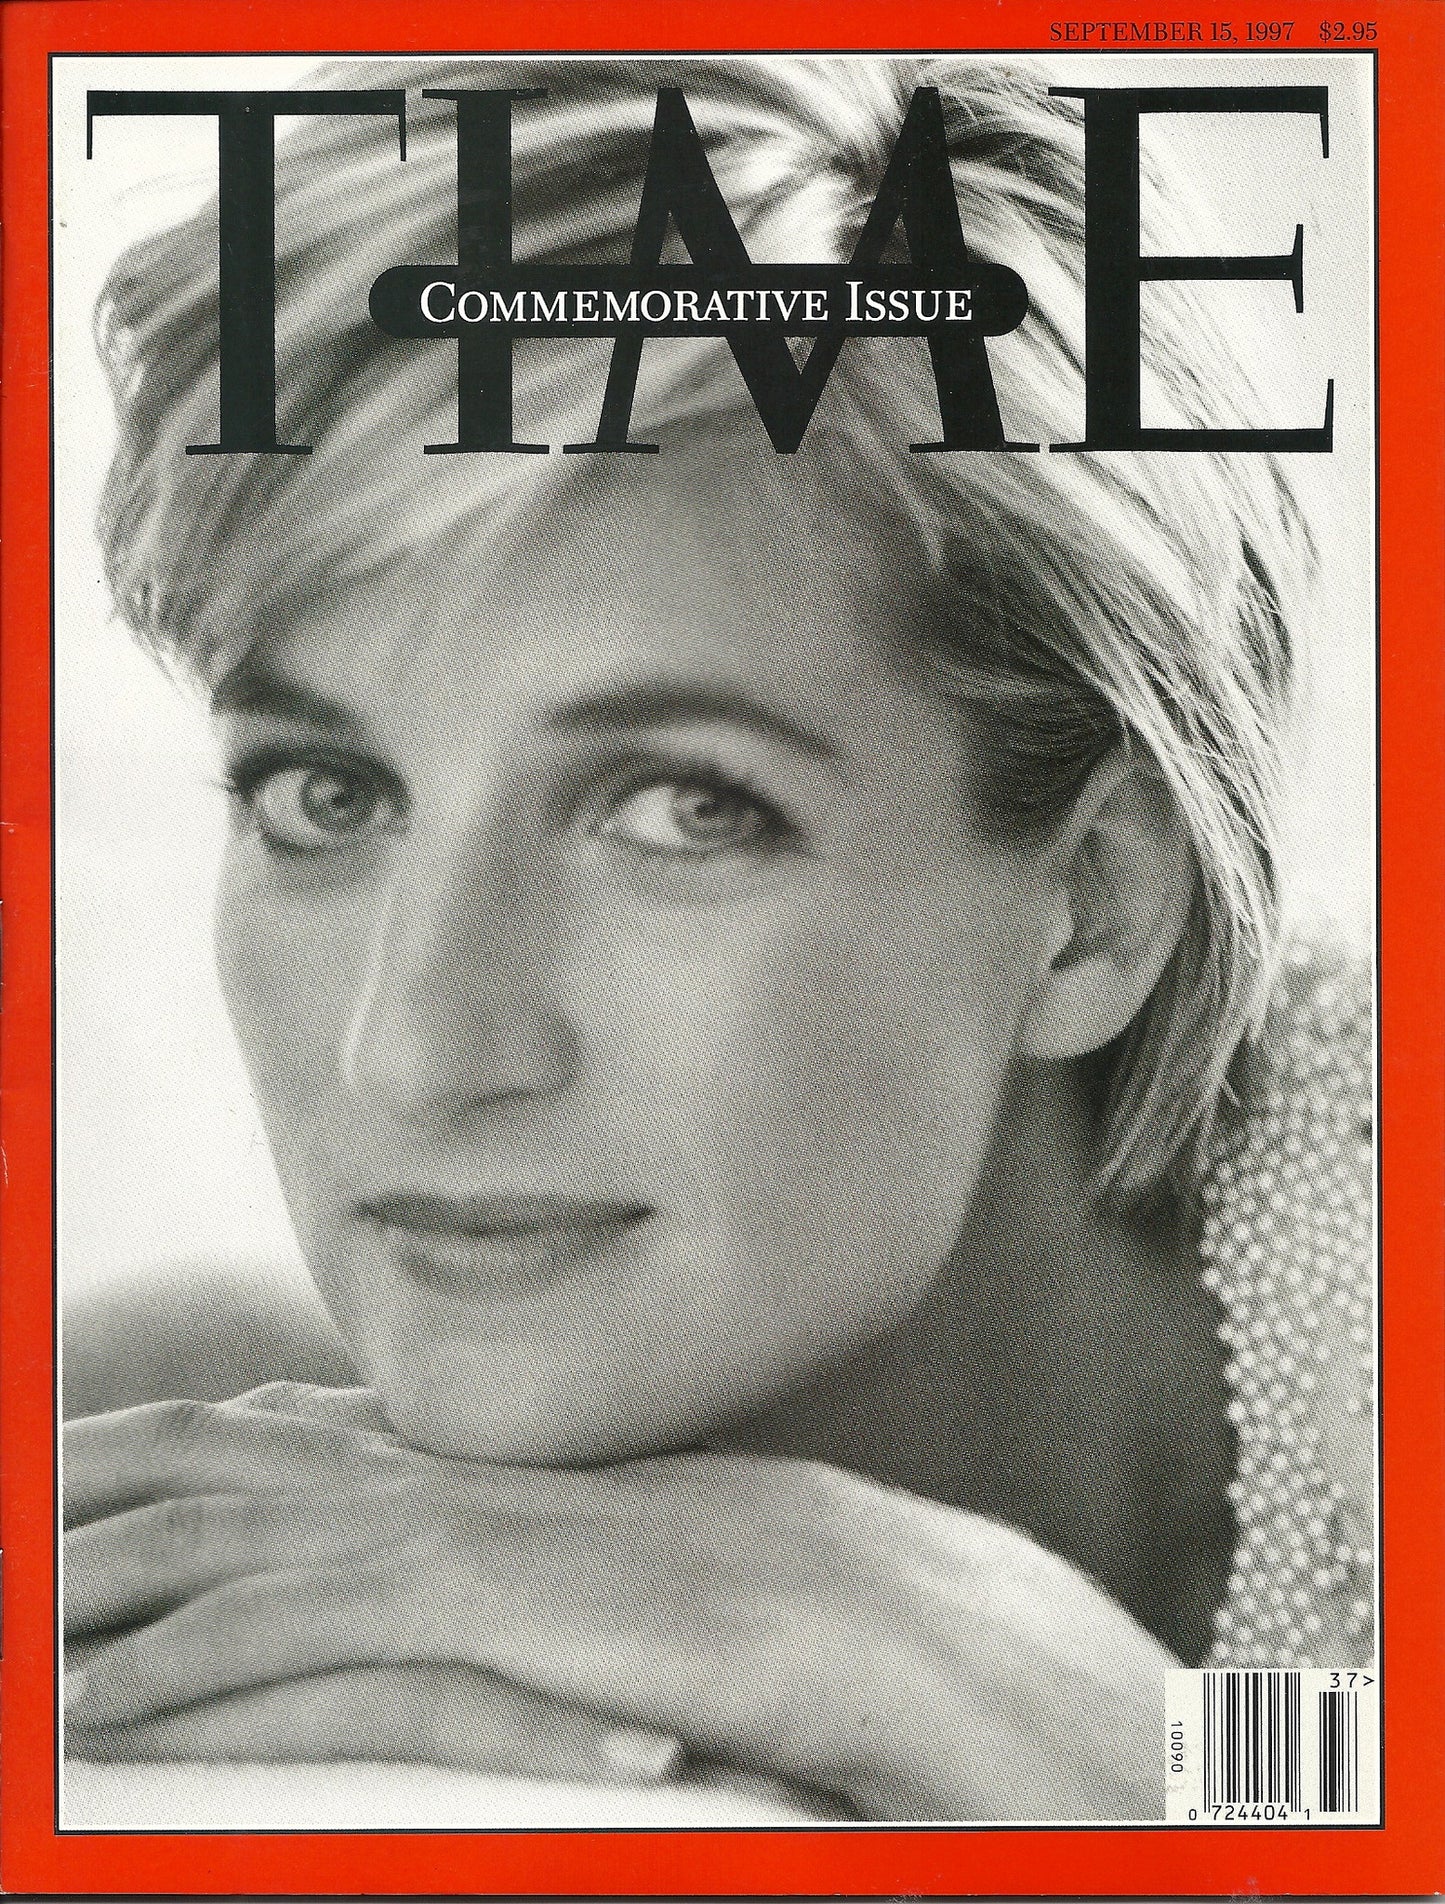 09 15 1997 Time Princess Diana